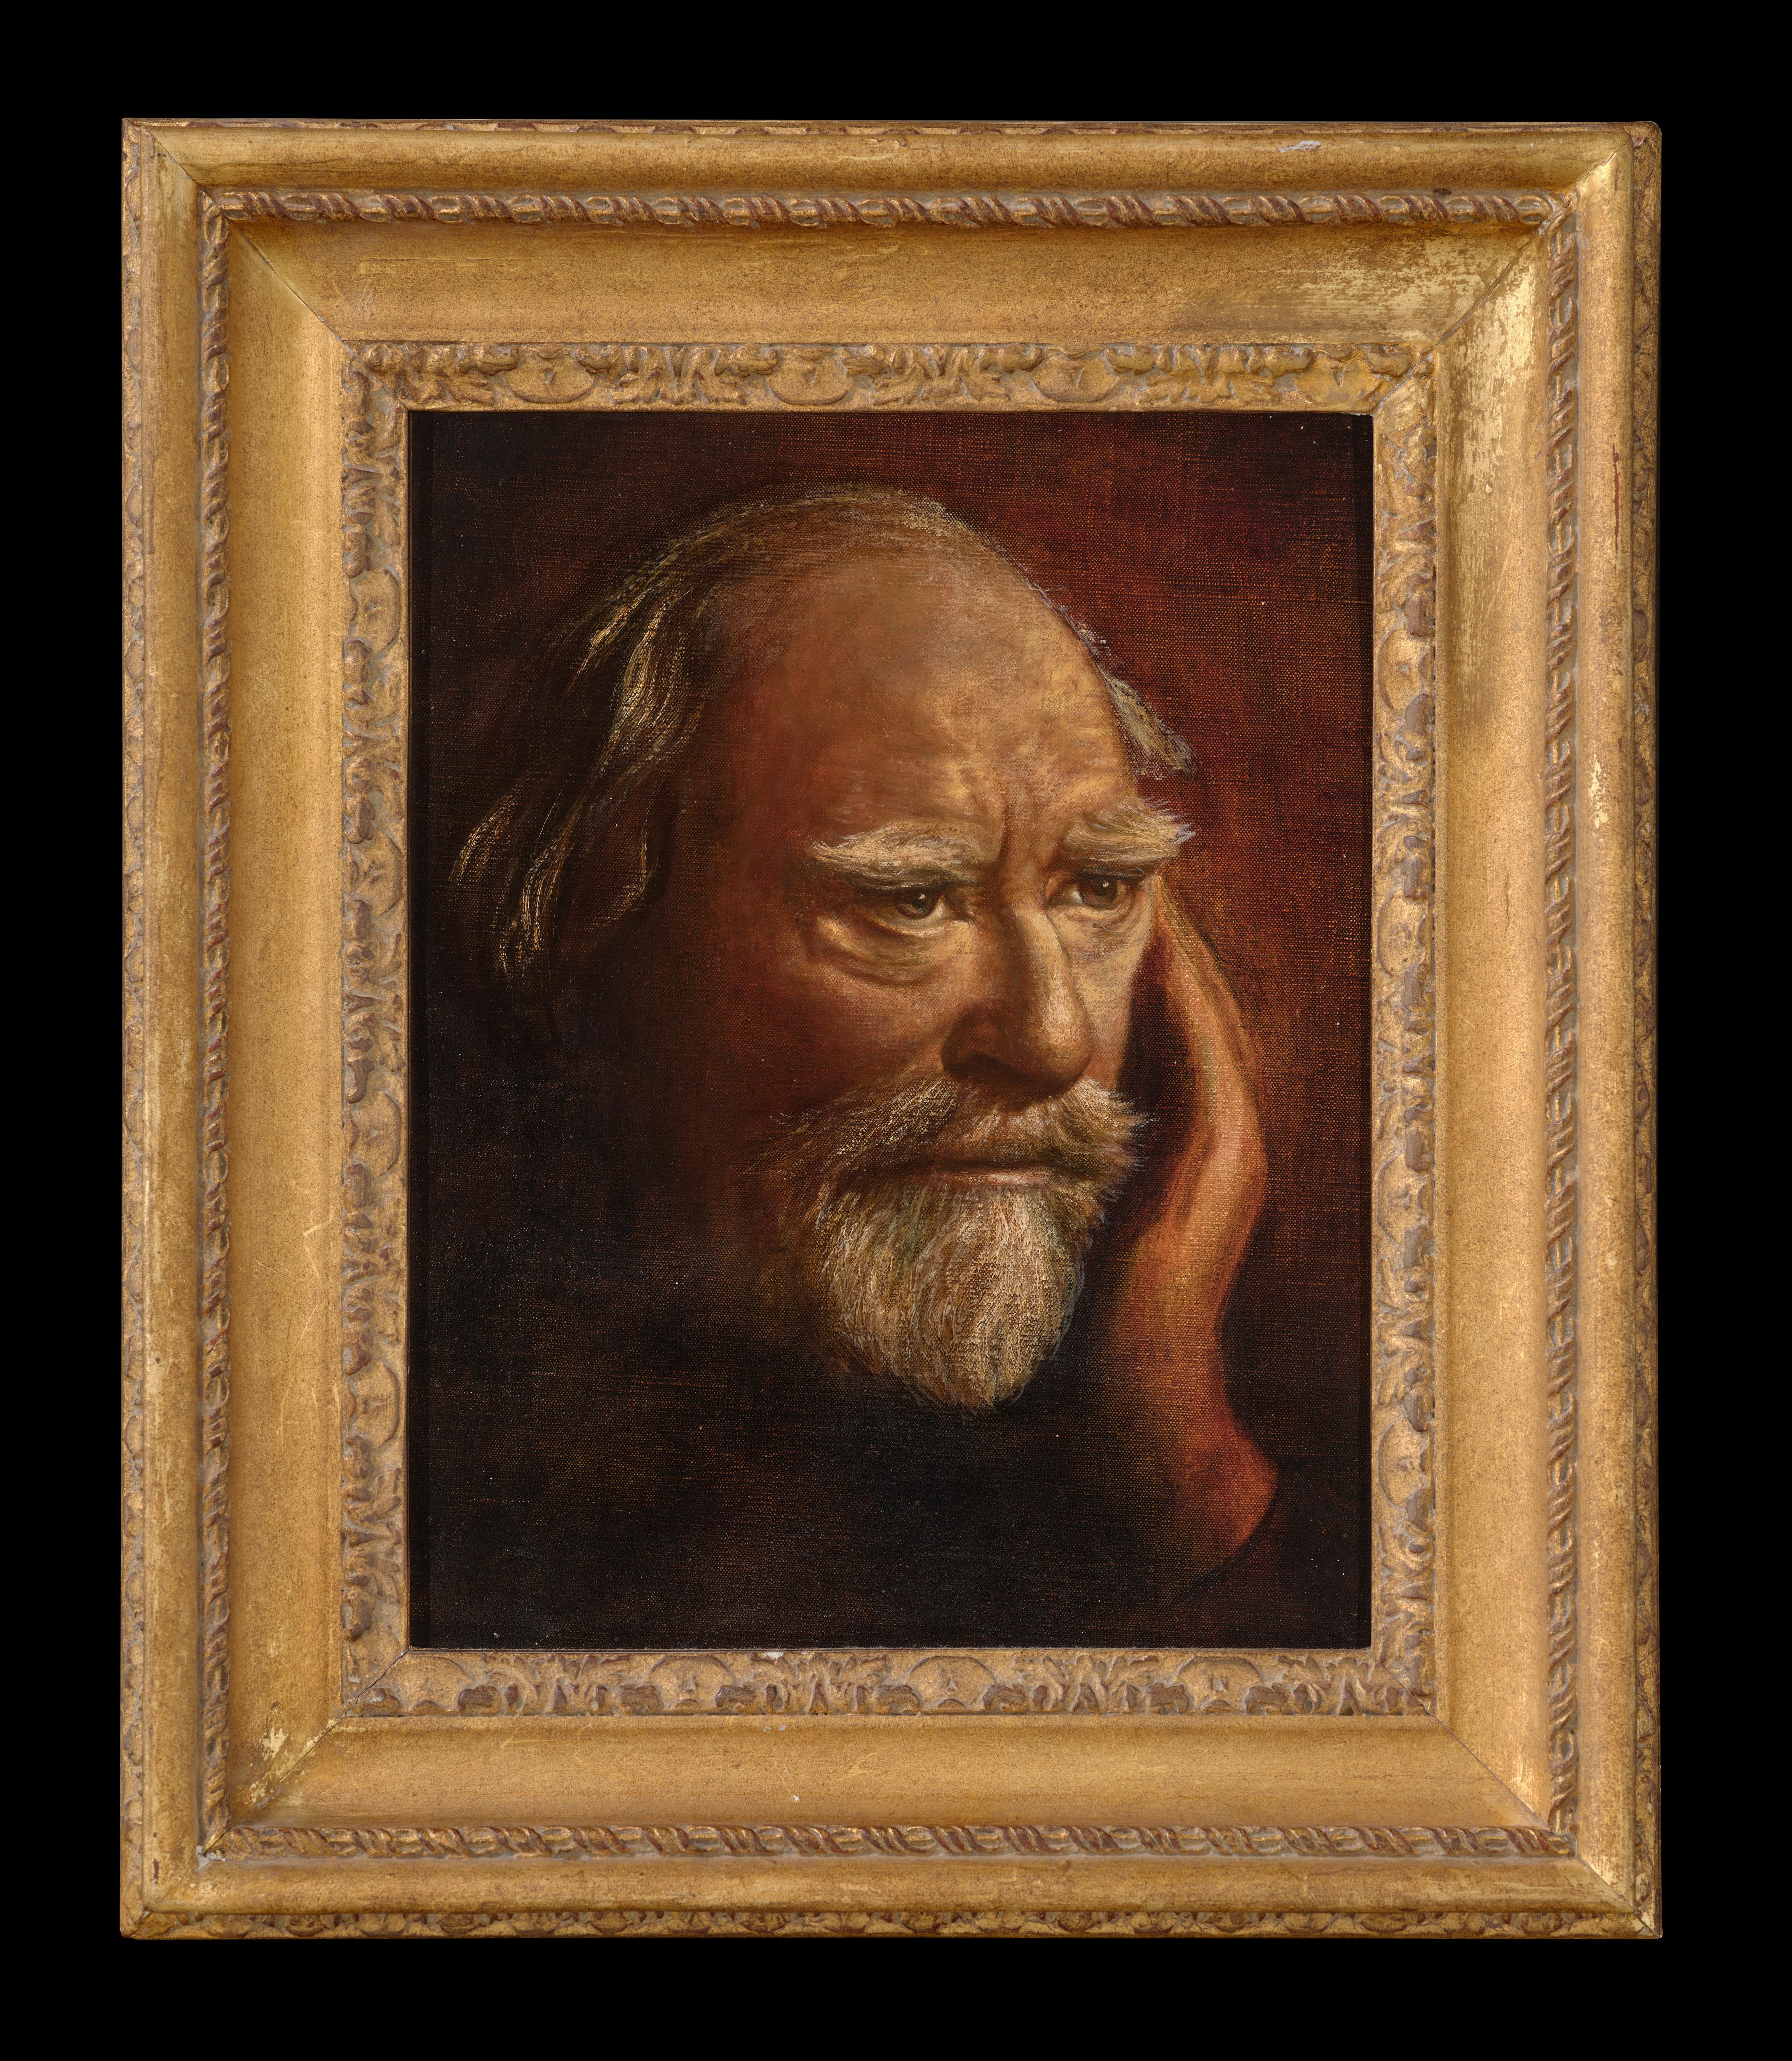 Augustus John Portrait Painting - Self portrait